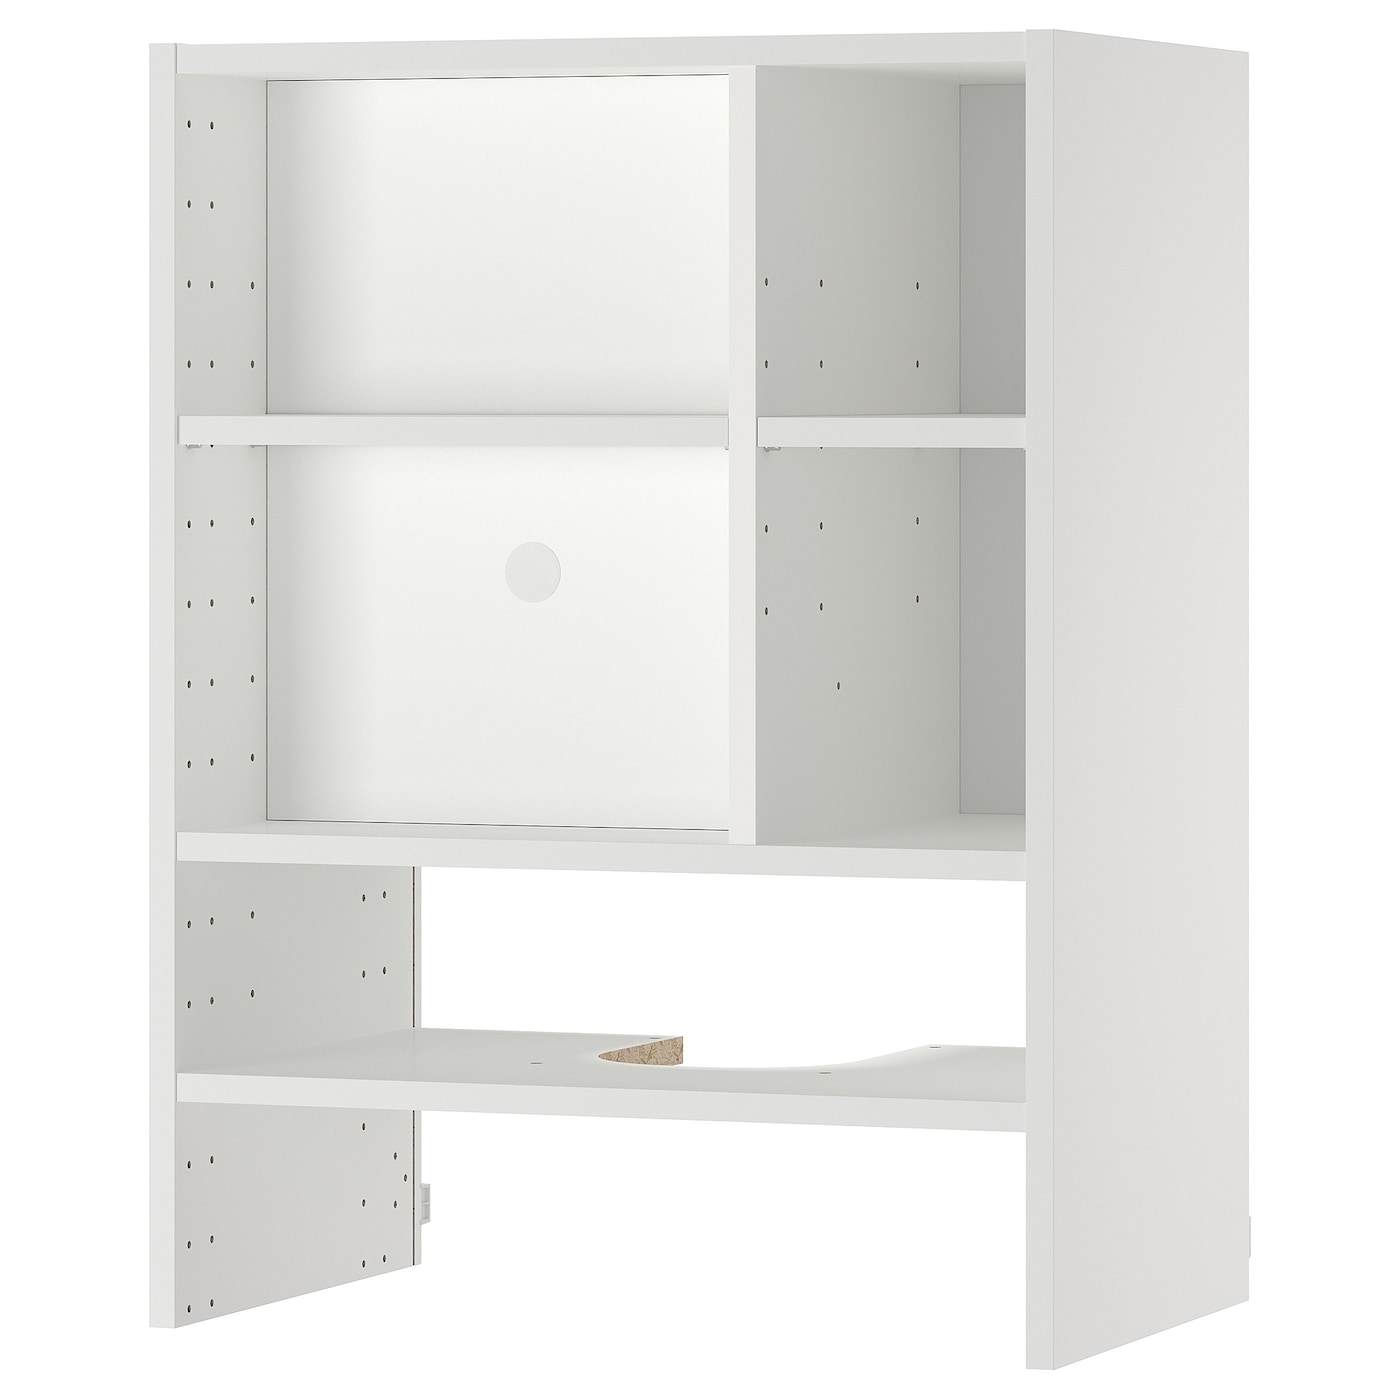 Шкафчик навесной для встроенной вытяжки -  METOD  IKEA/  МЕТОД ИКЕА, 80х60 см, белый